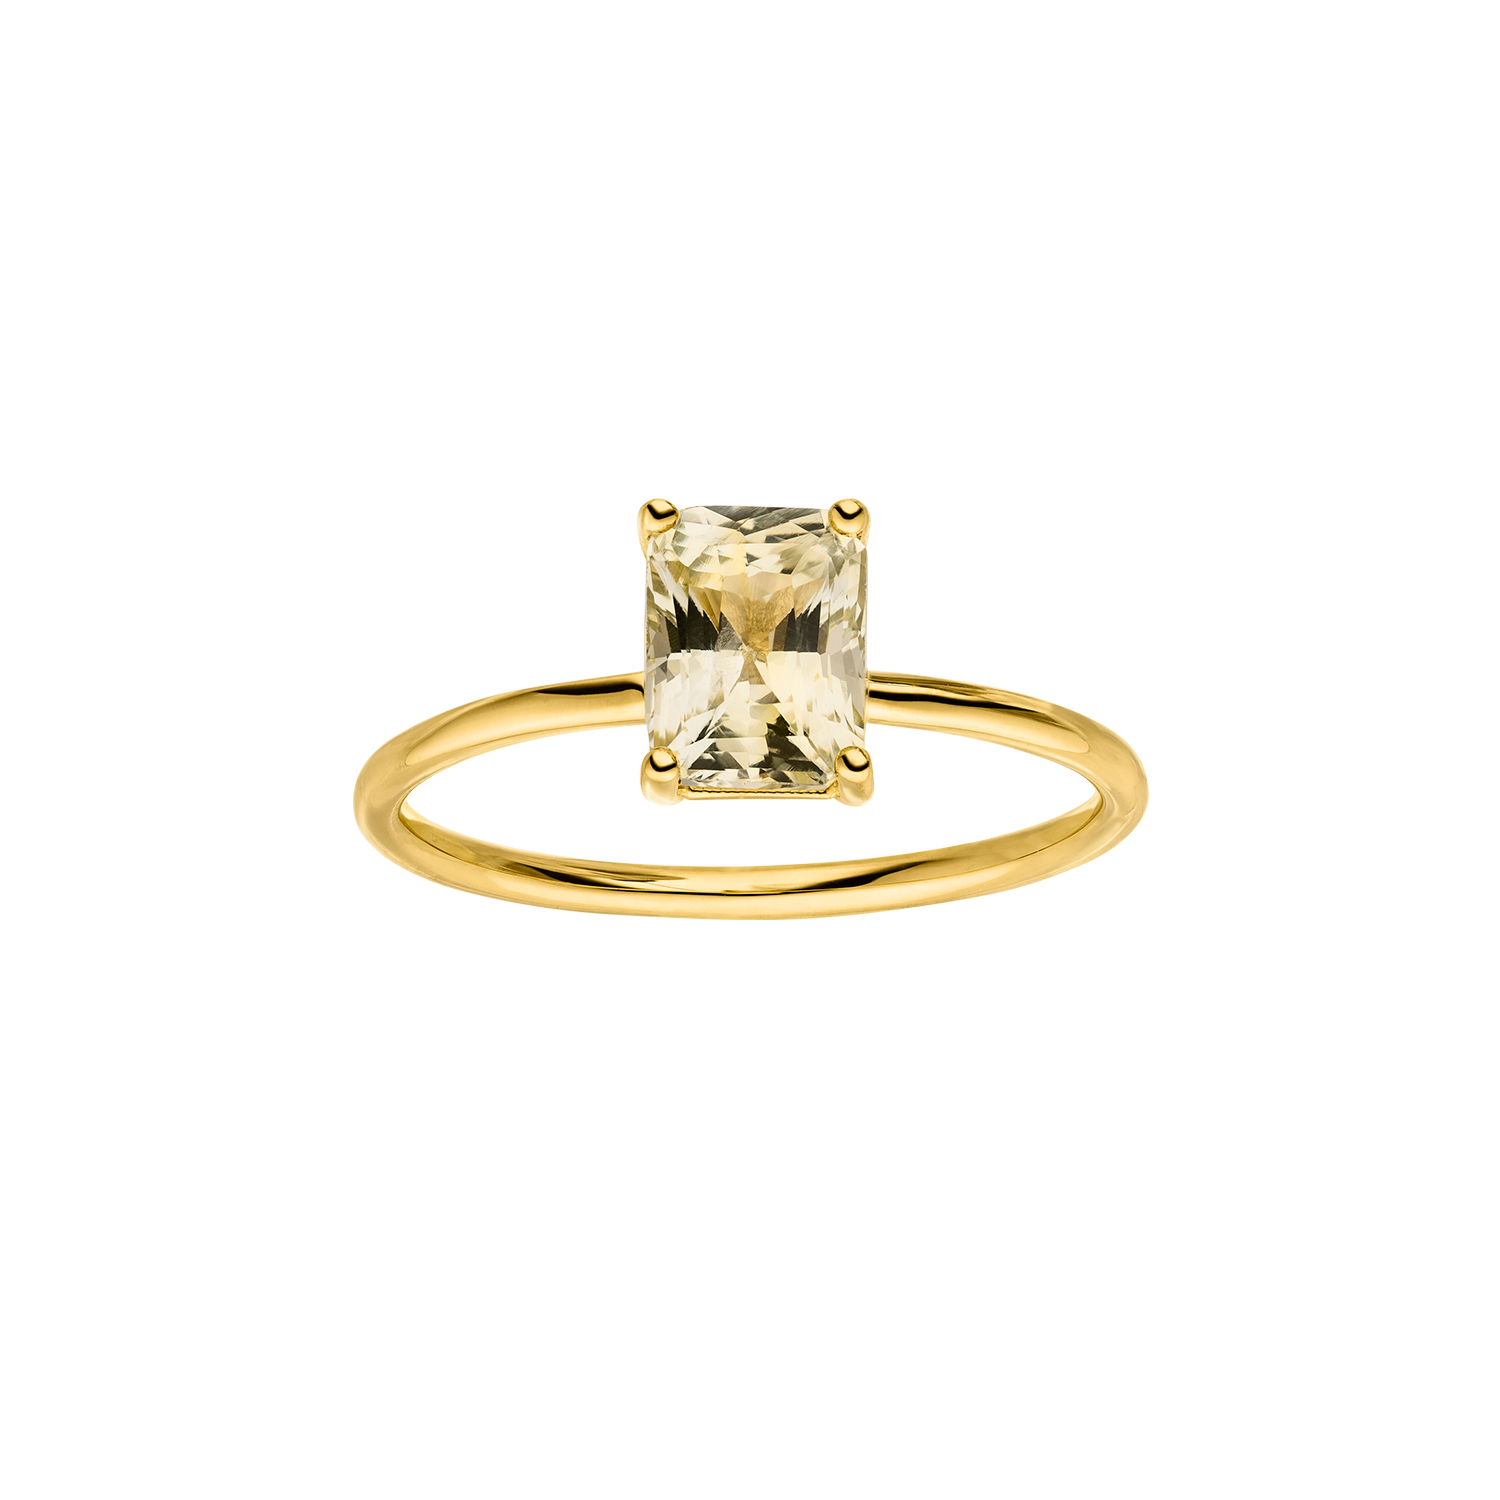 NinaKastens_Ceylon Sapphire Ring